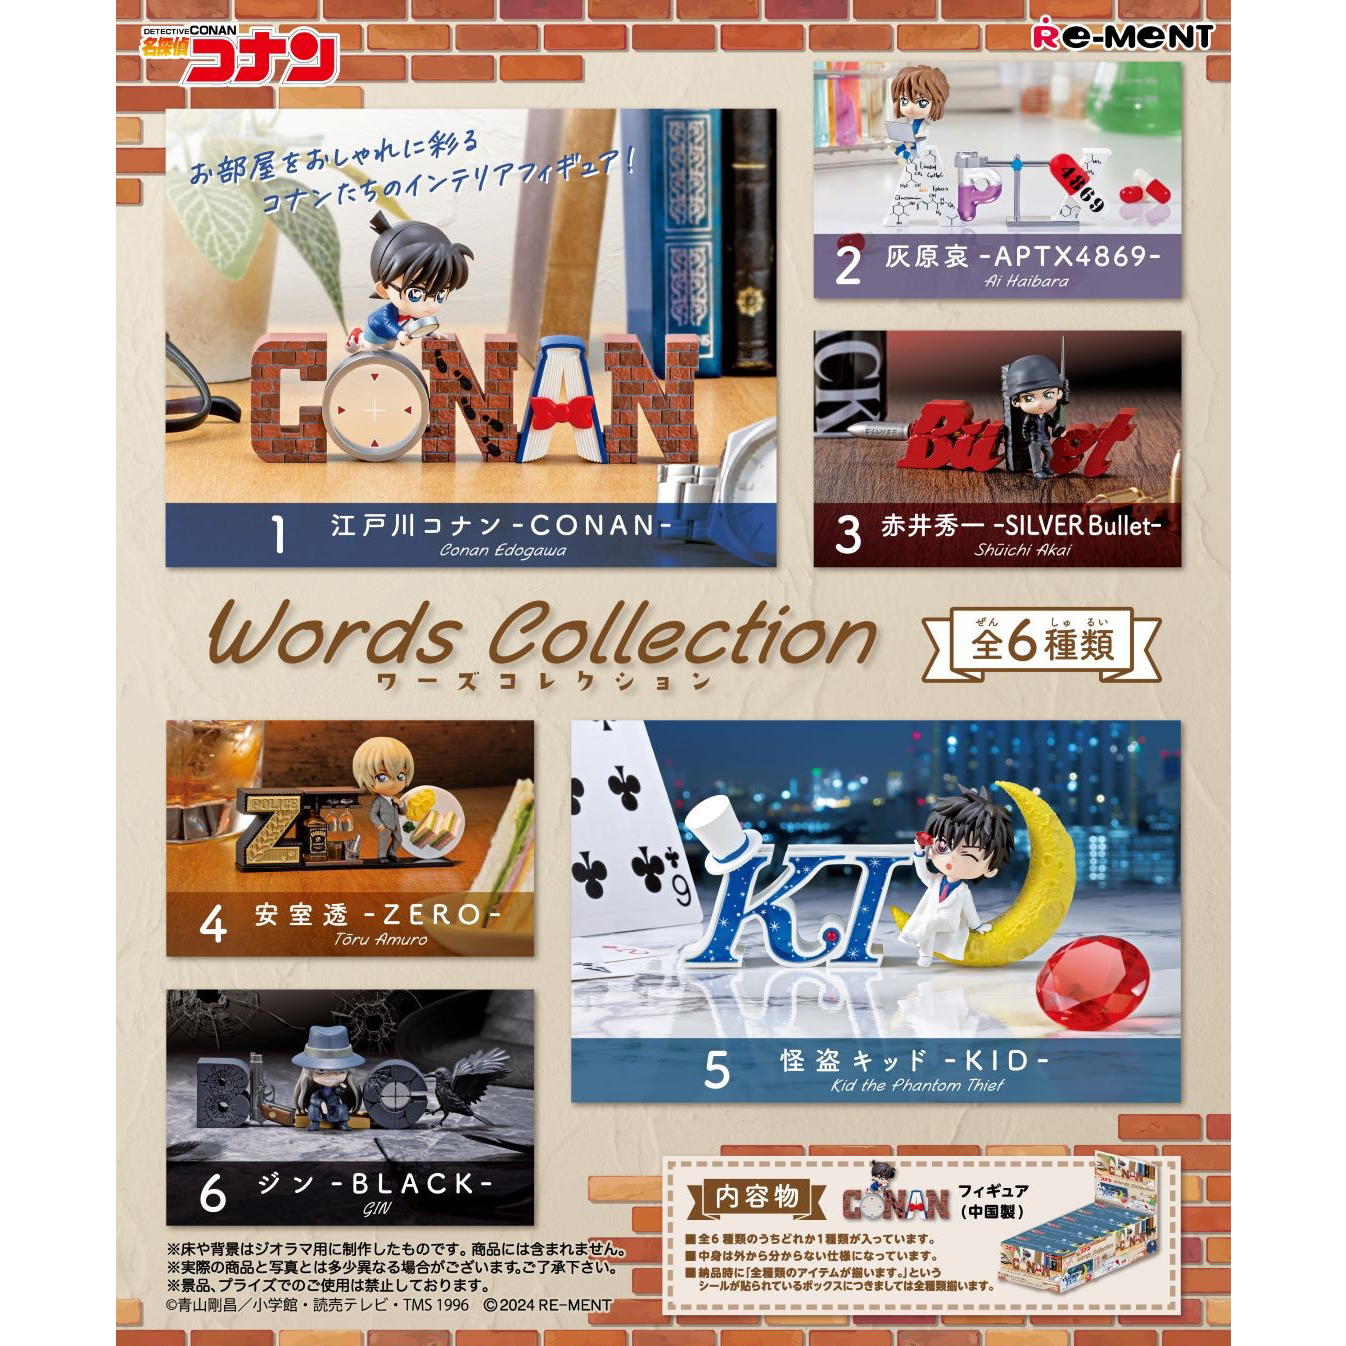 [24년5월,6월입고예정] 리멘트 명탐정 코난 Words Collection (전 6종/세트판매) (굿즈)